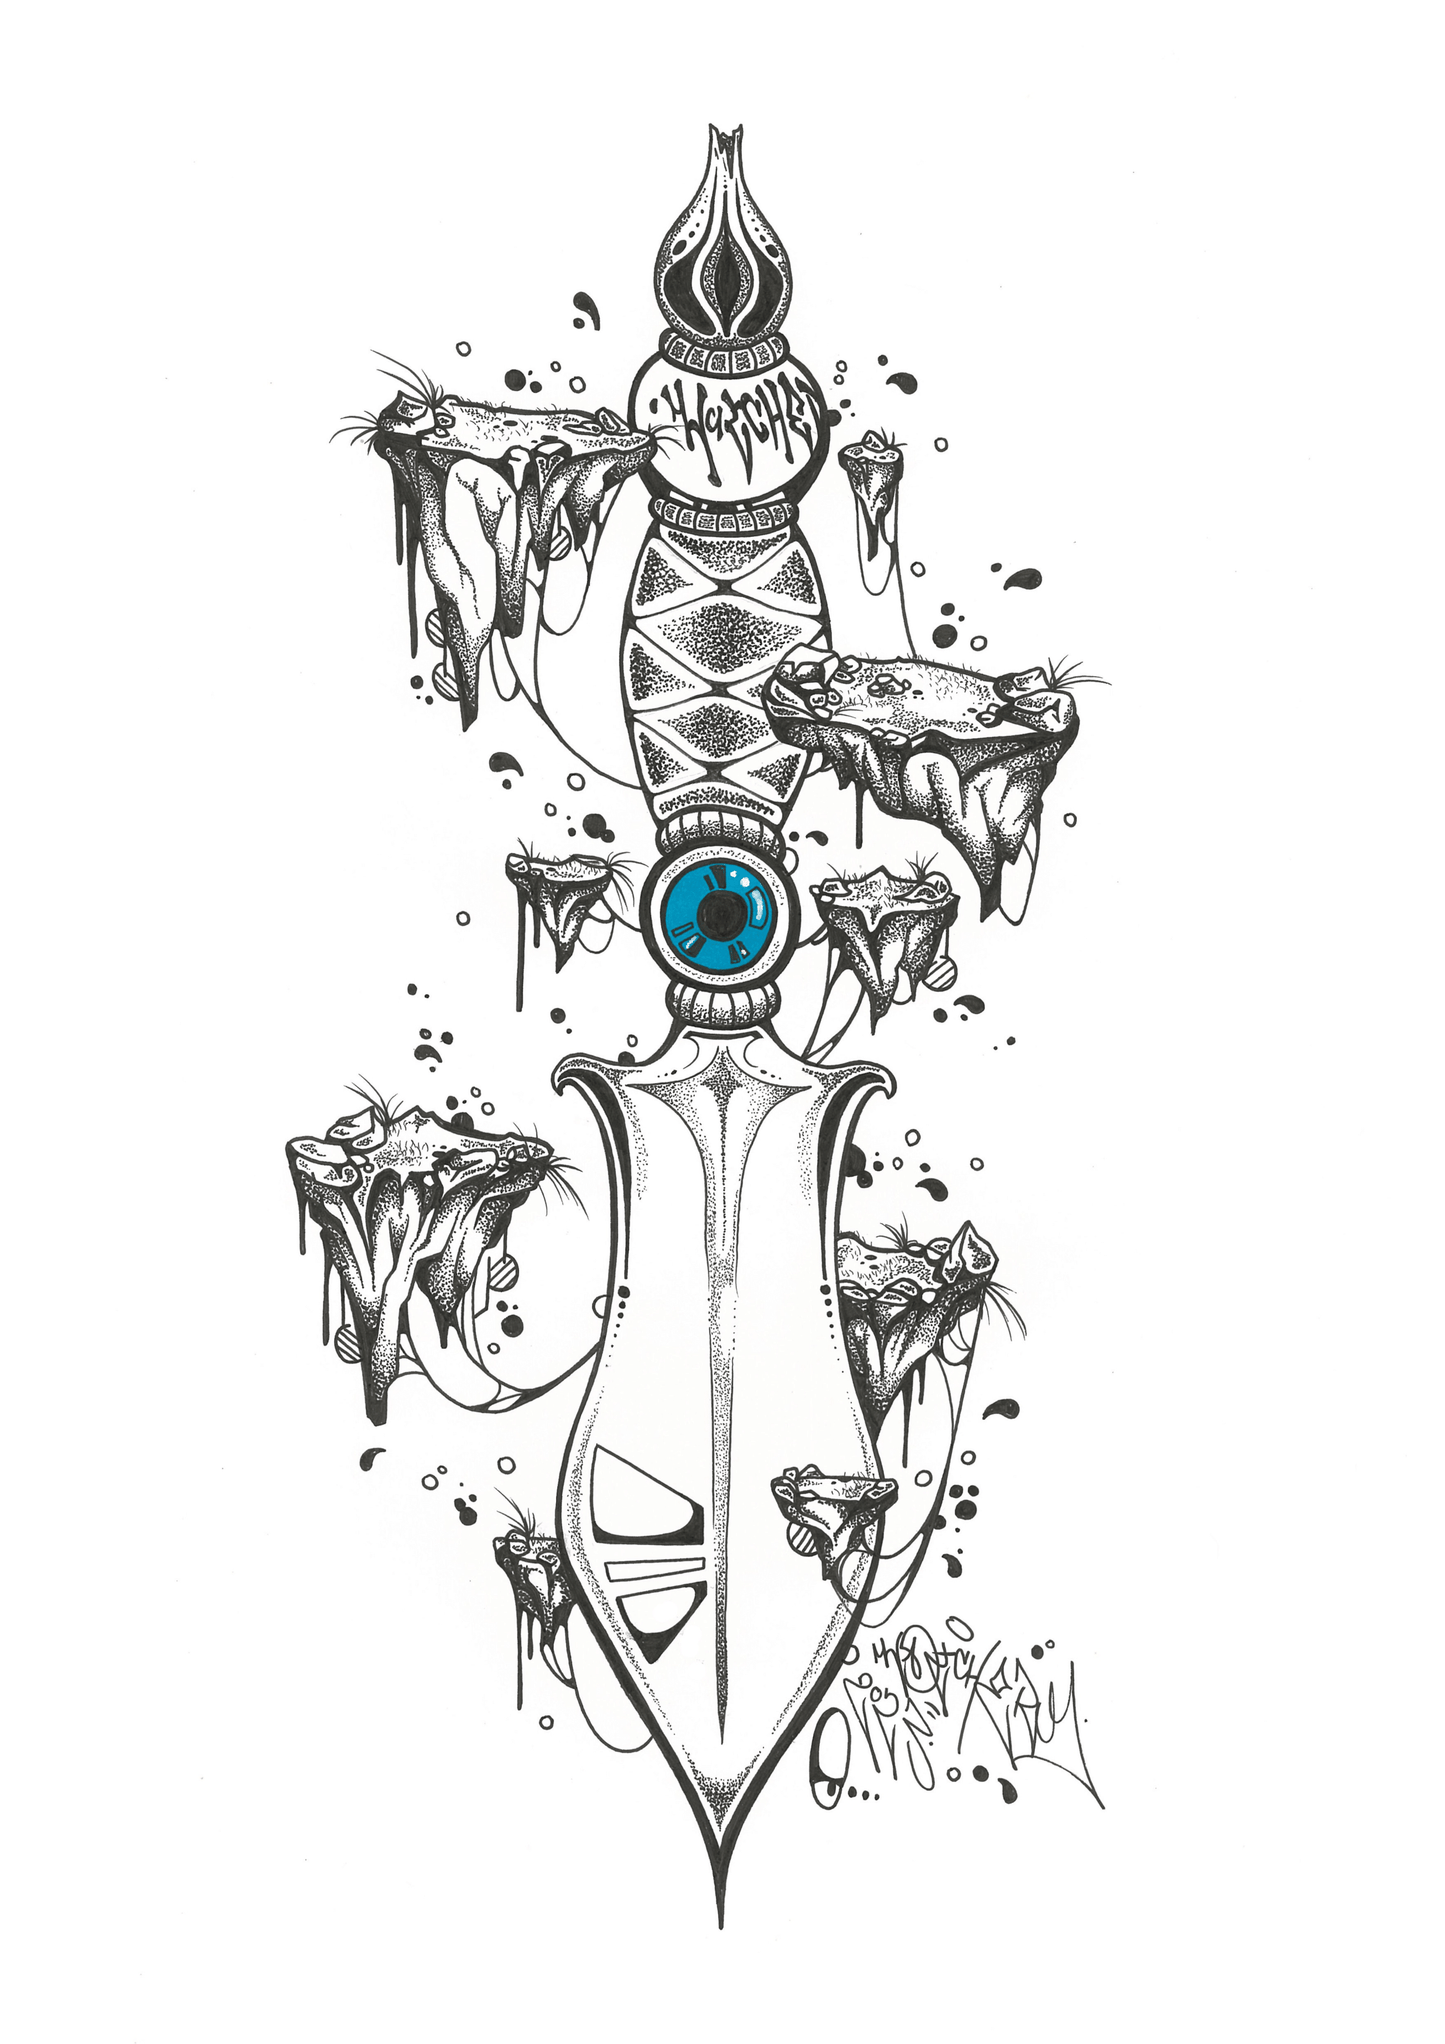 Dagger illustration